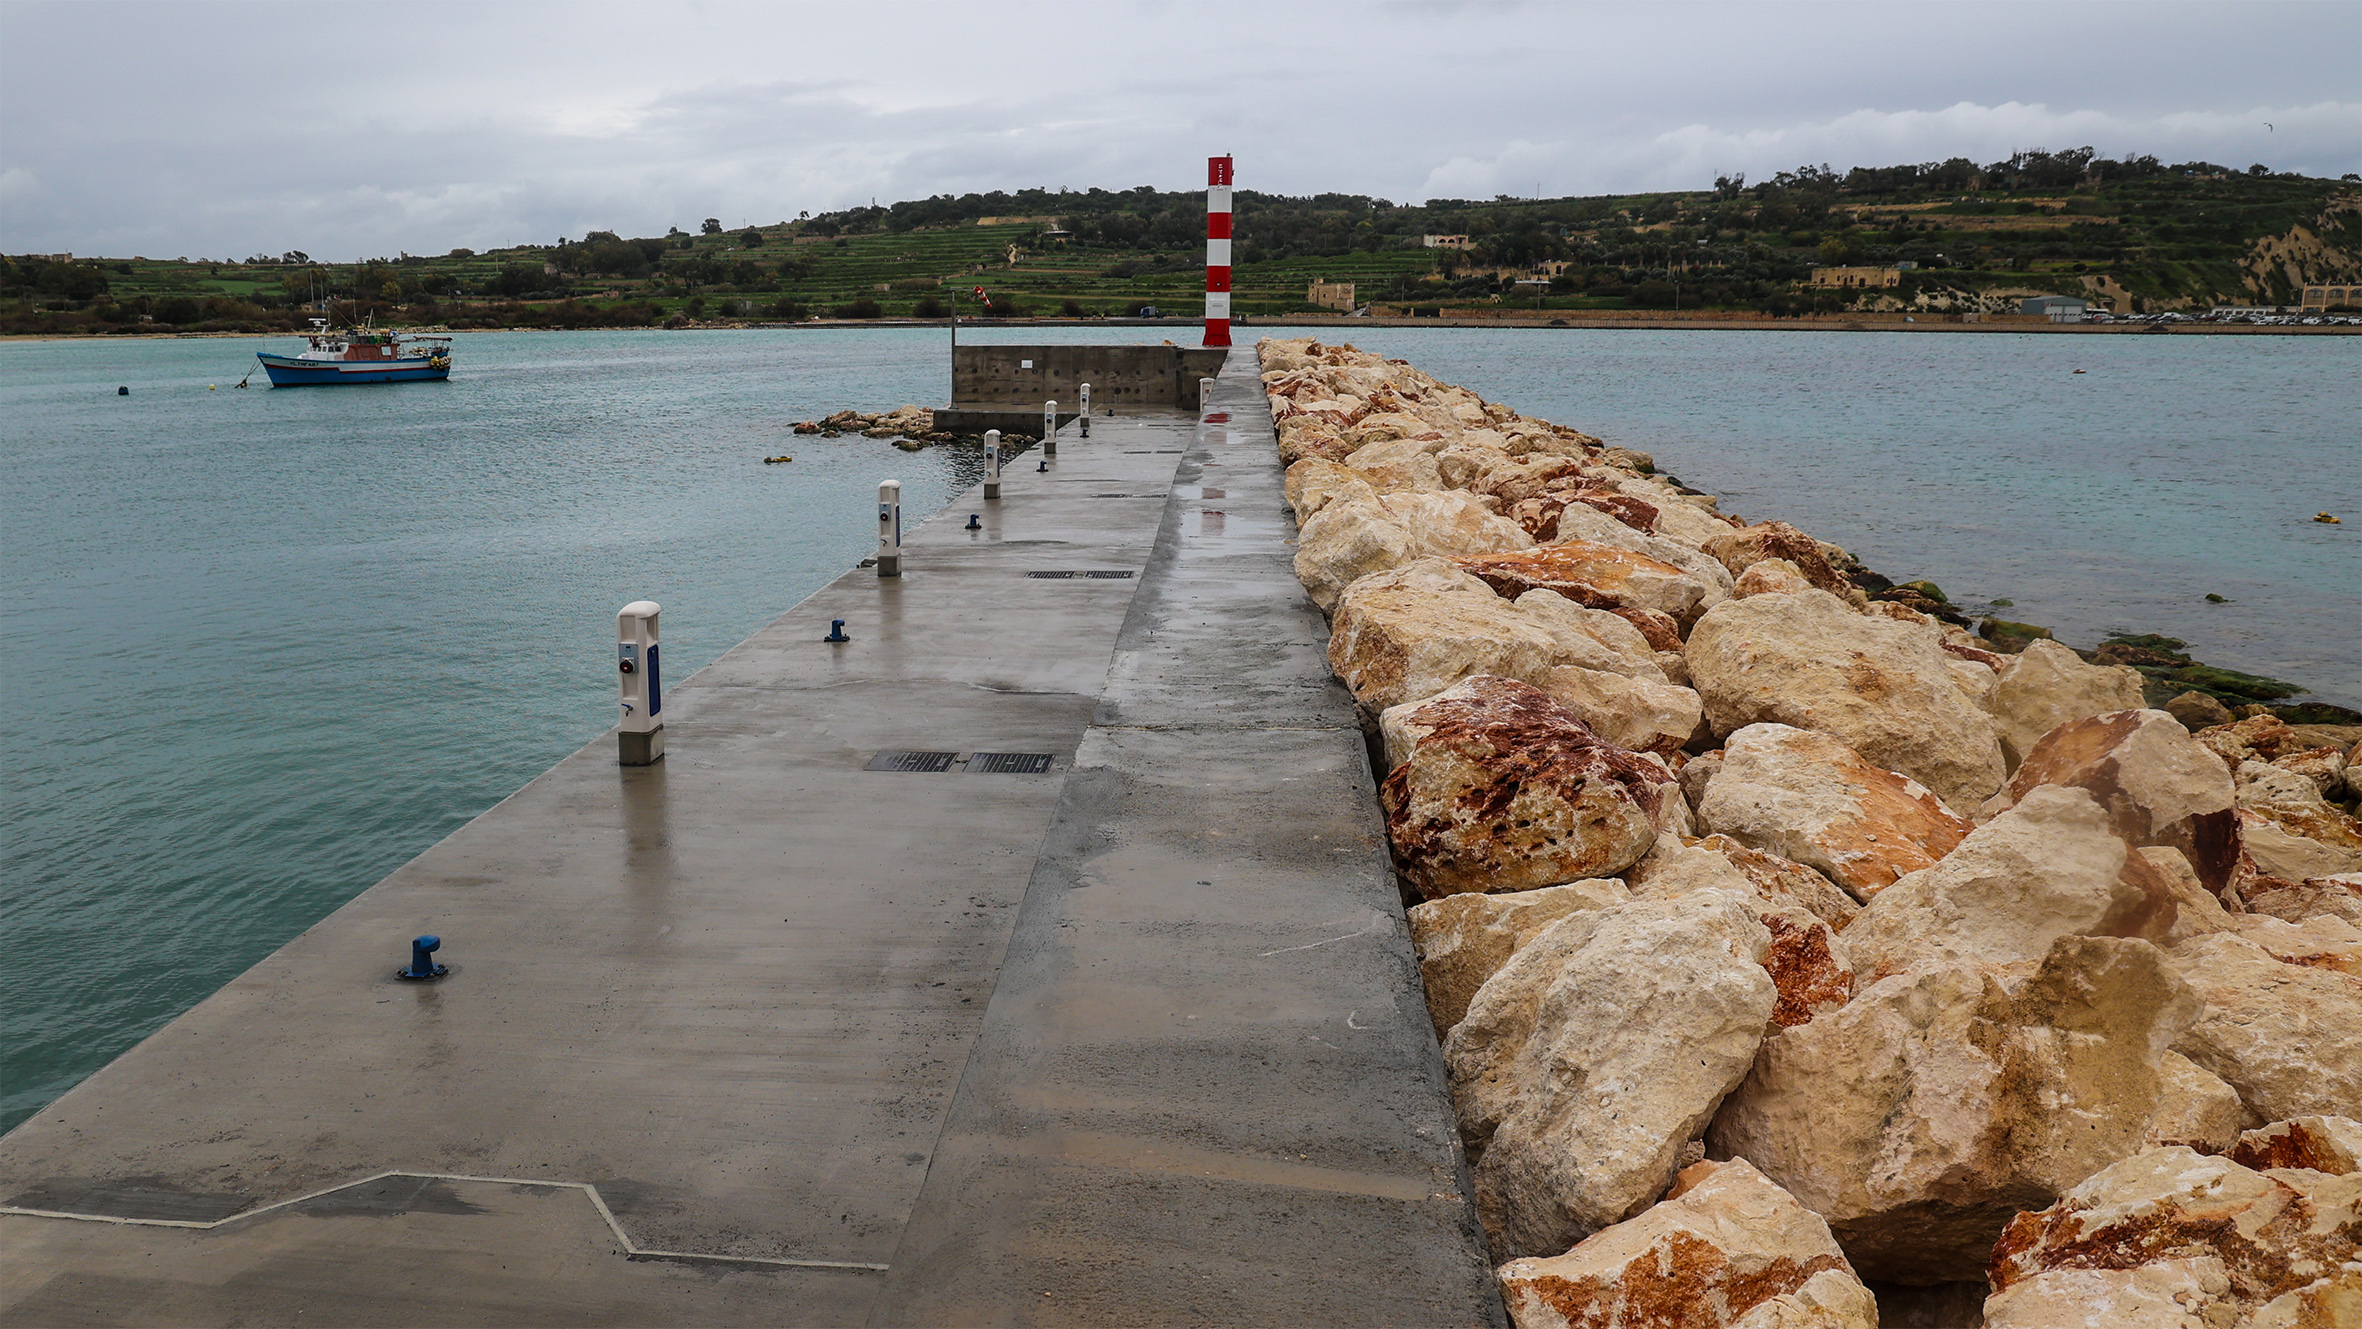 Infrastructure Malta completes Qrejten Breakwater Project